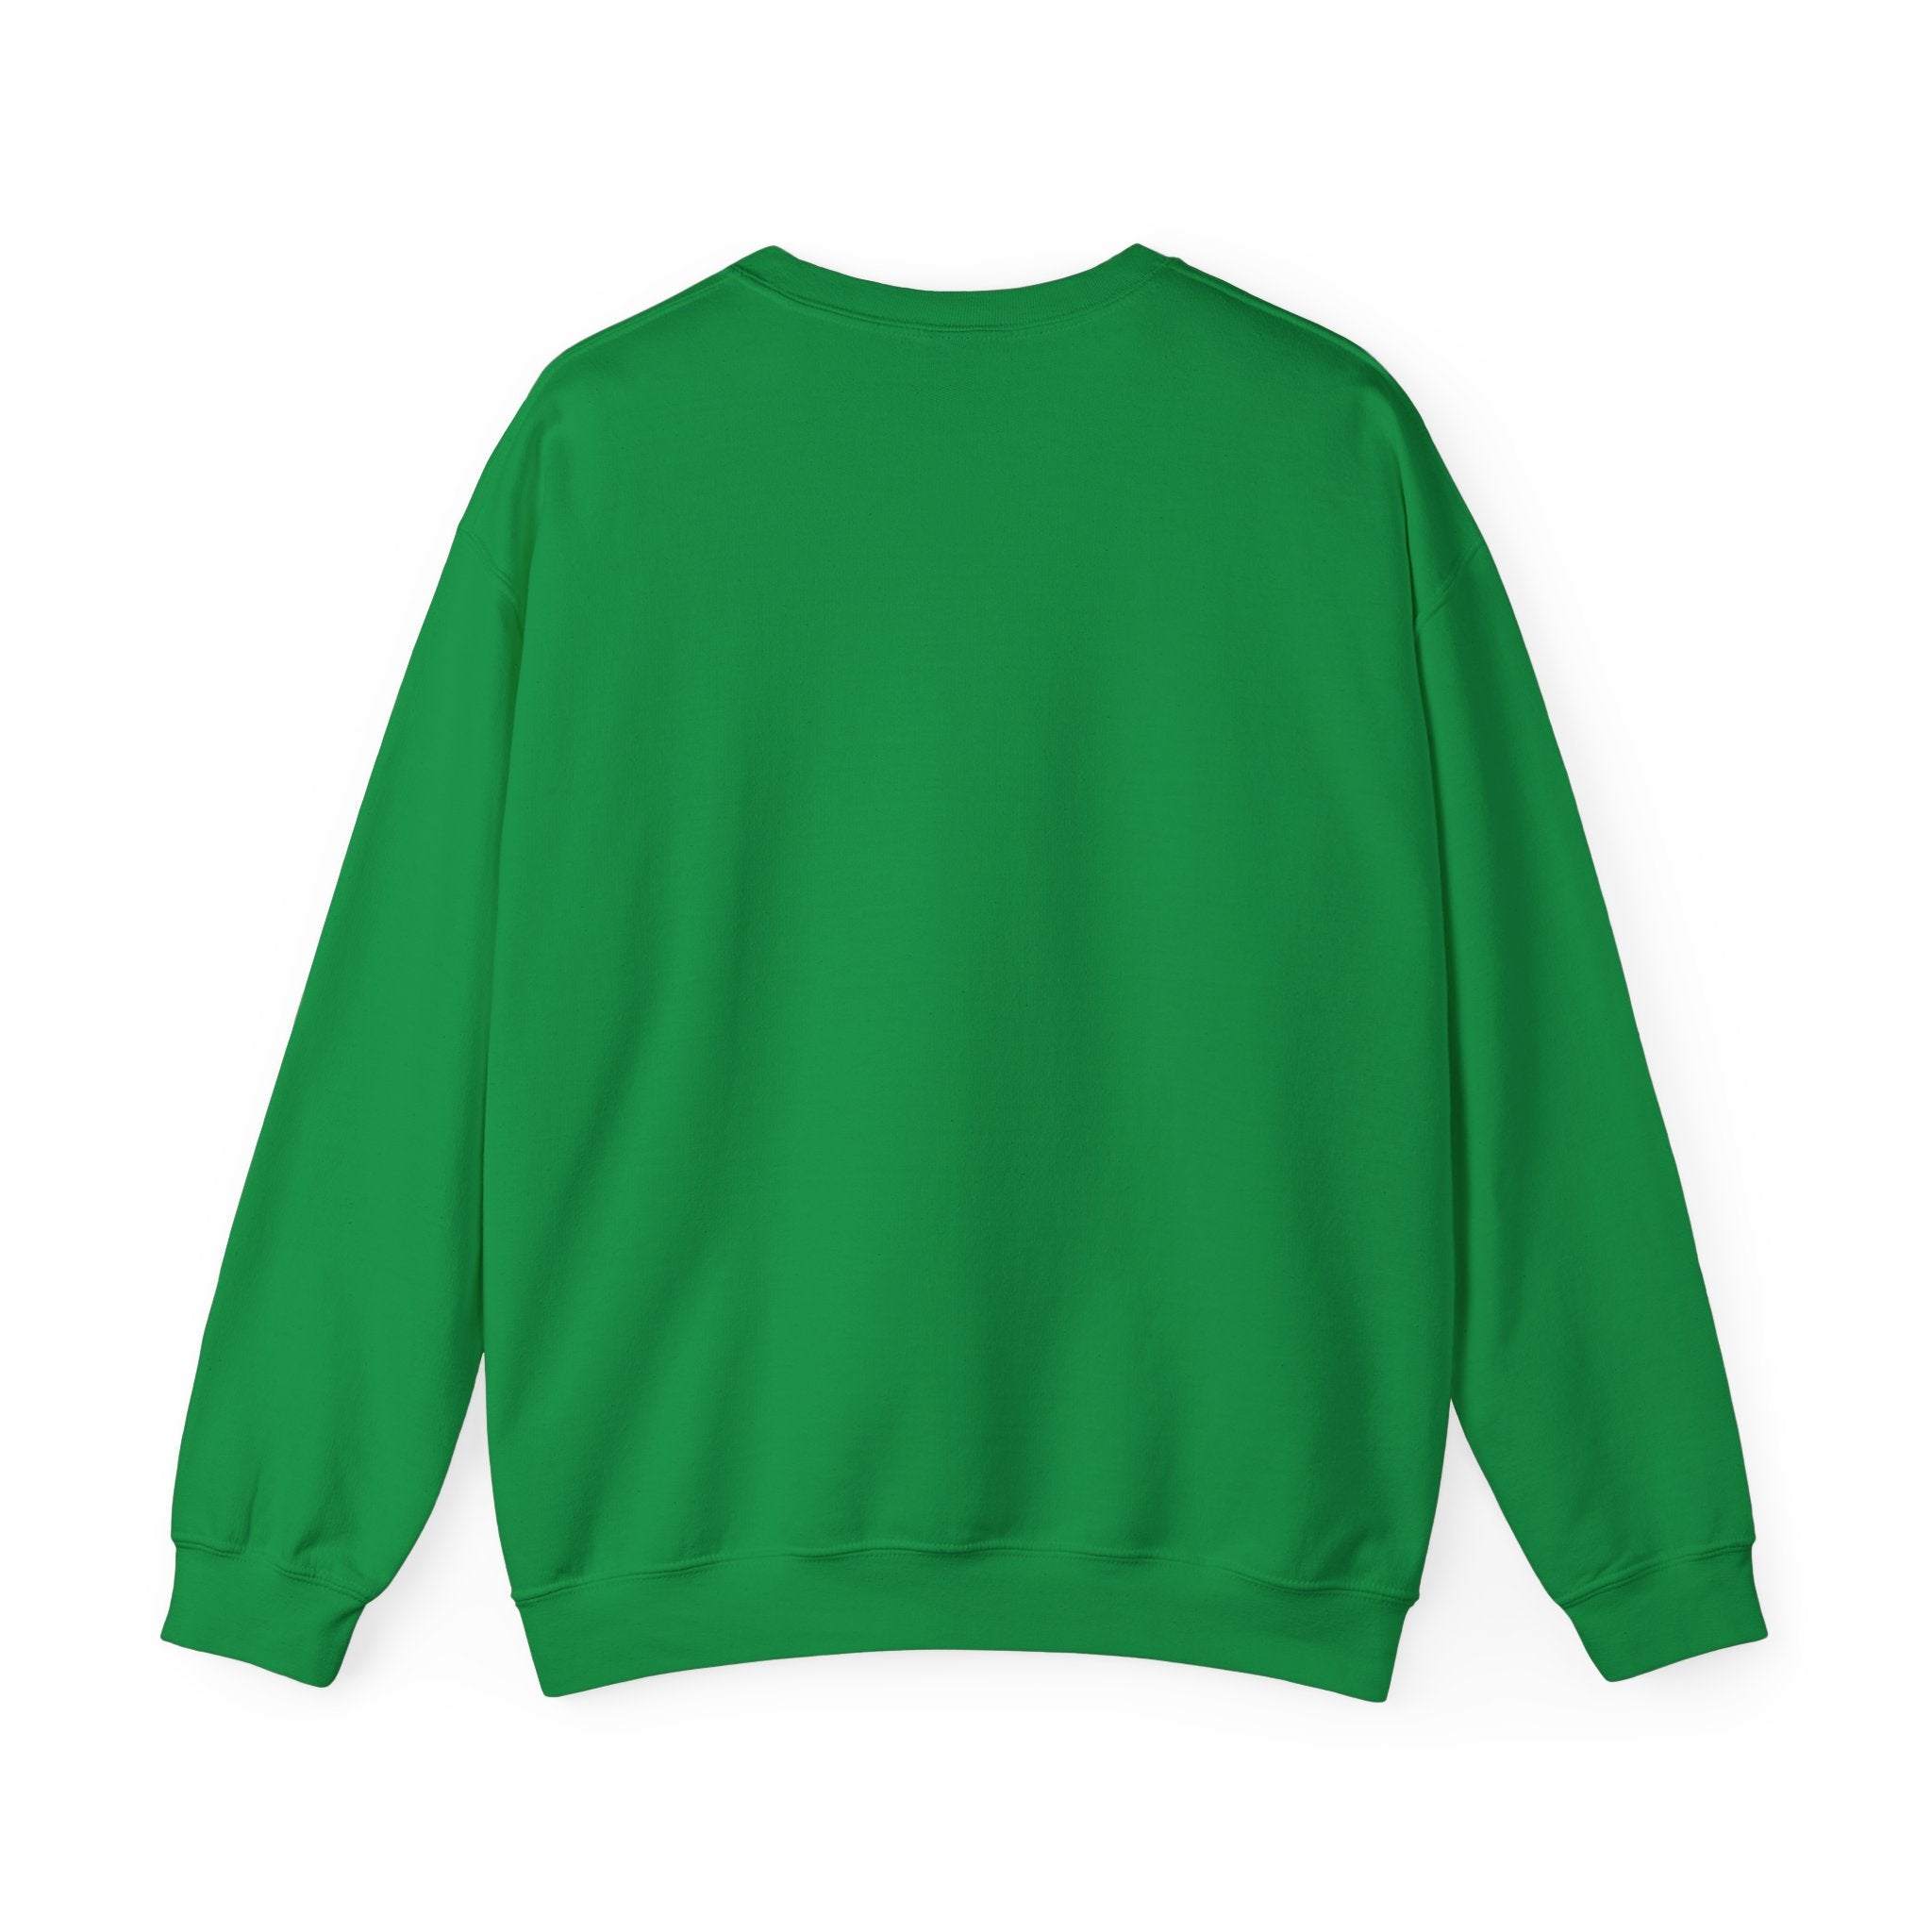 Vintage - ALO14 Crewneck Sweatshirt - FormulaFanatics